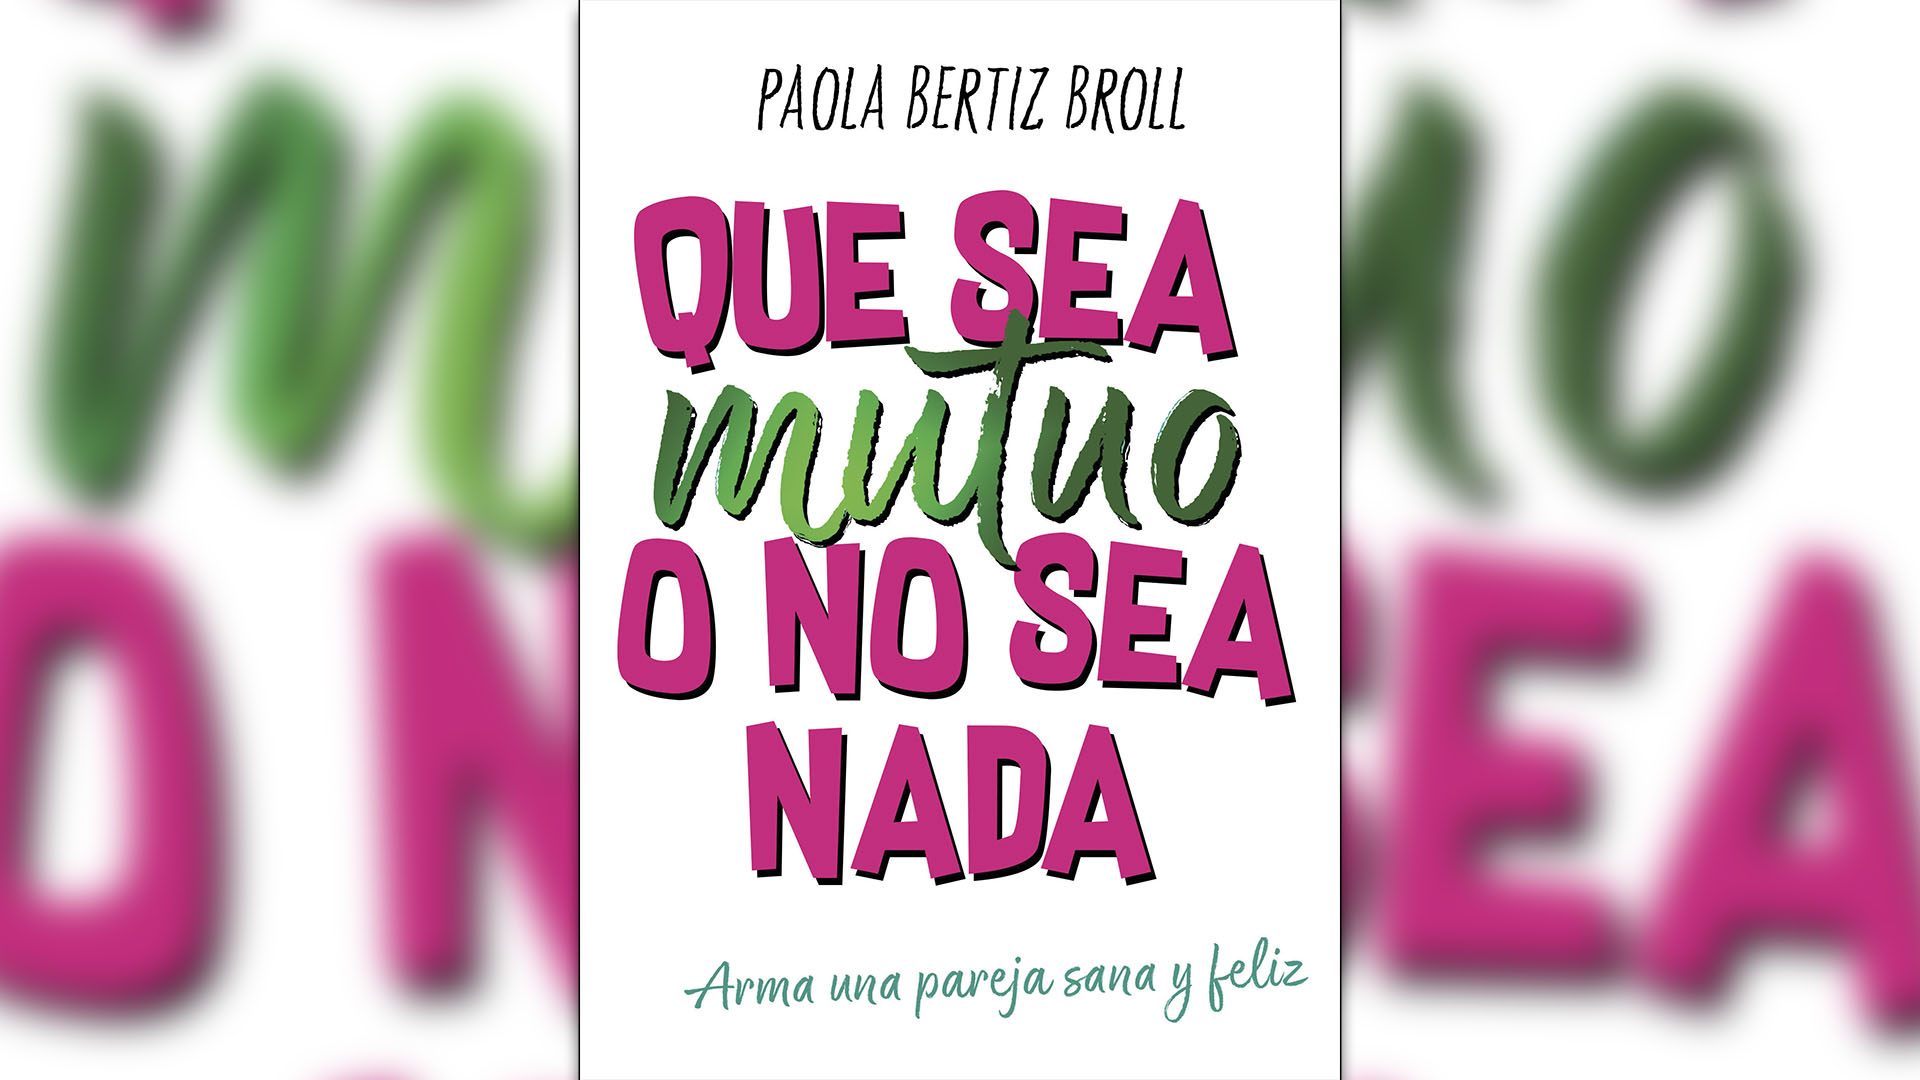 "Que sea mutuo o no sea nada", de Paola Bertiz Broll.